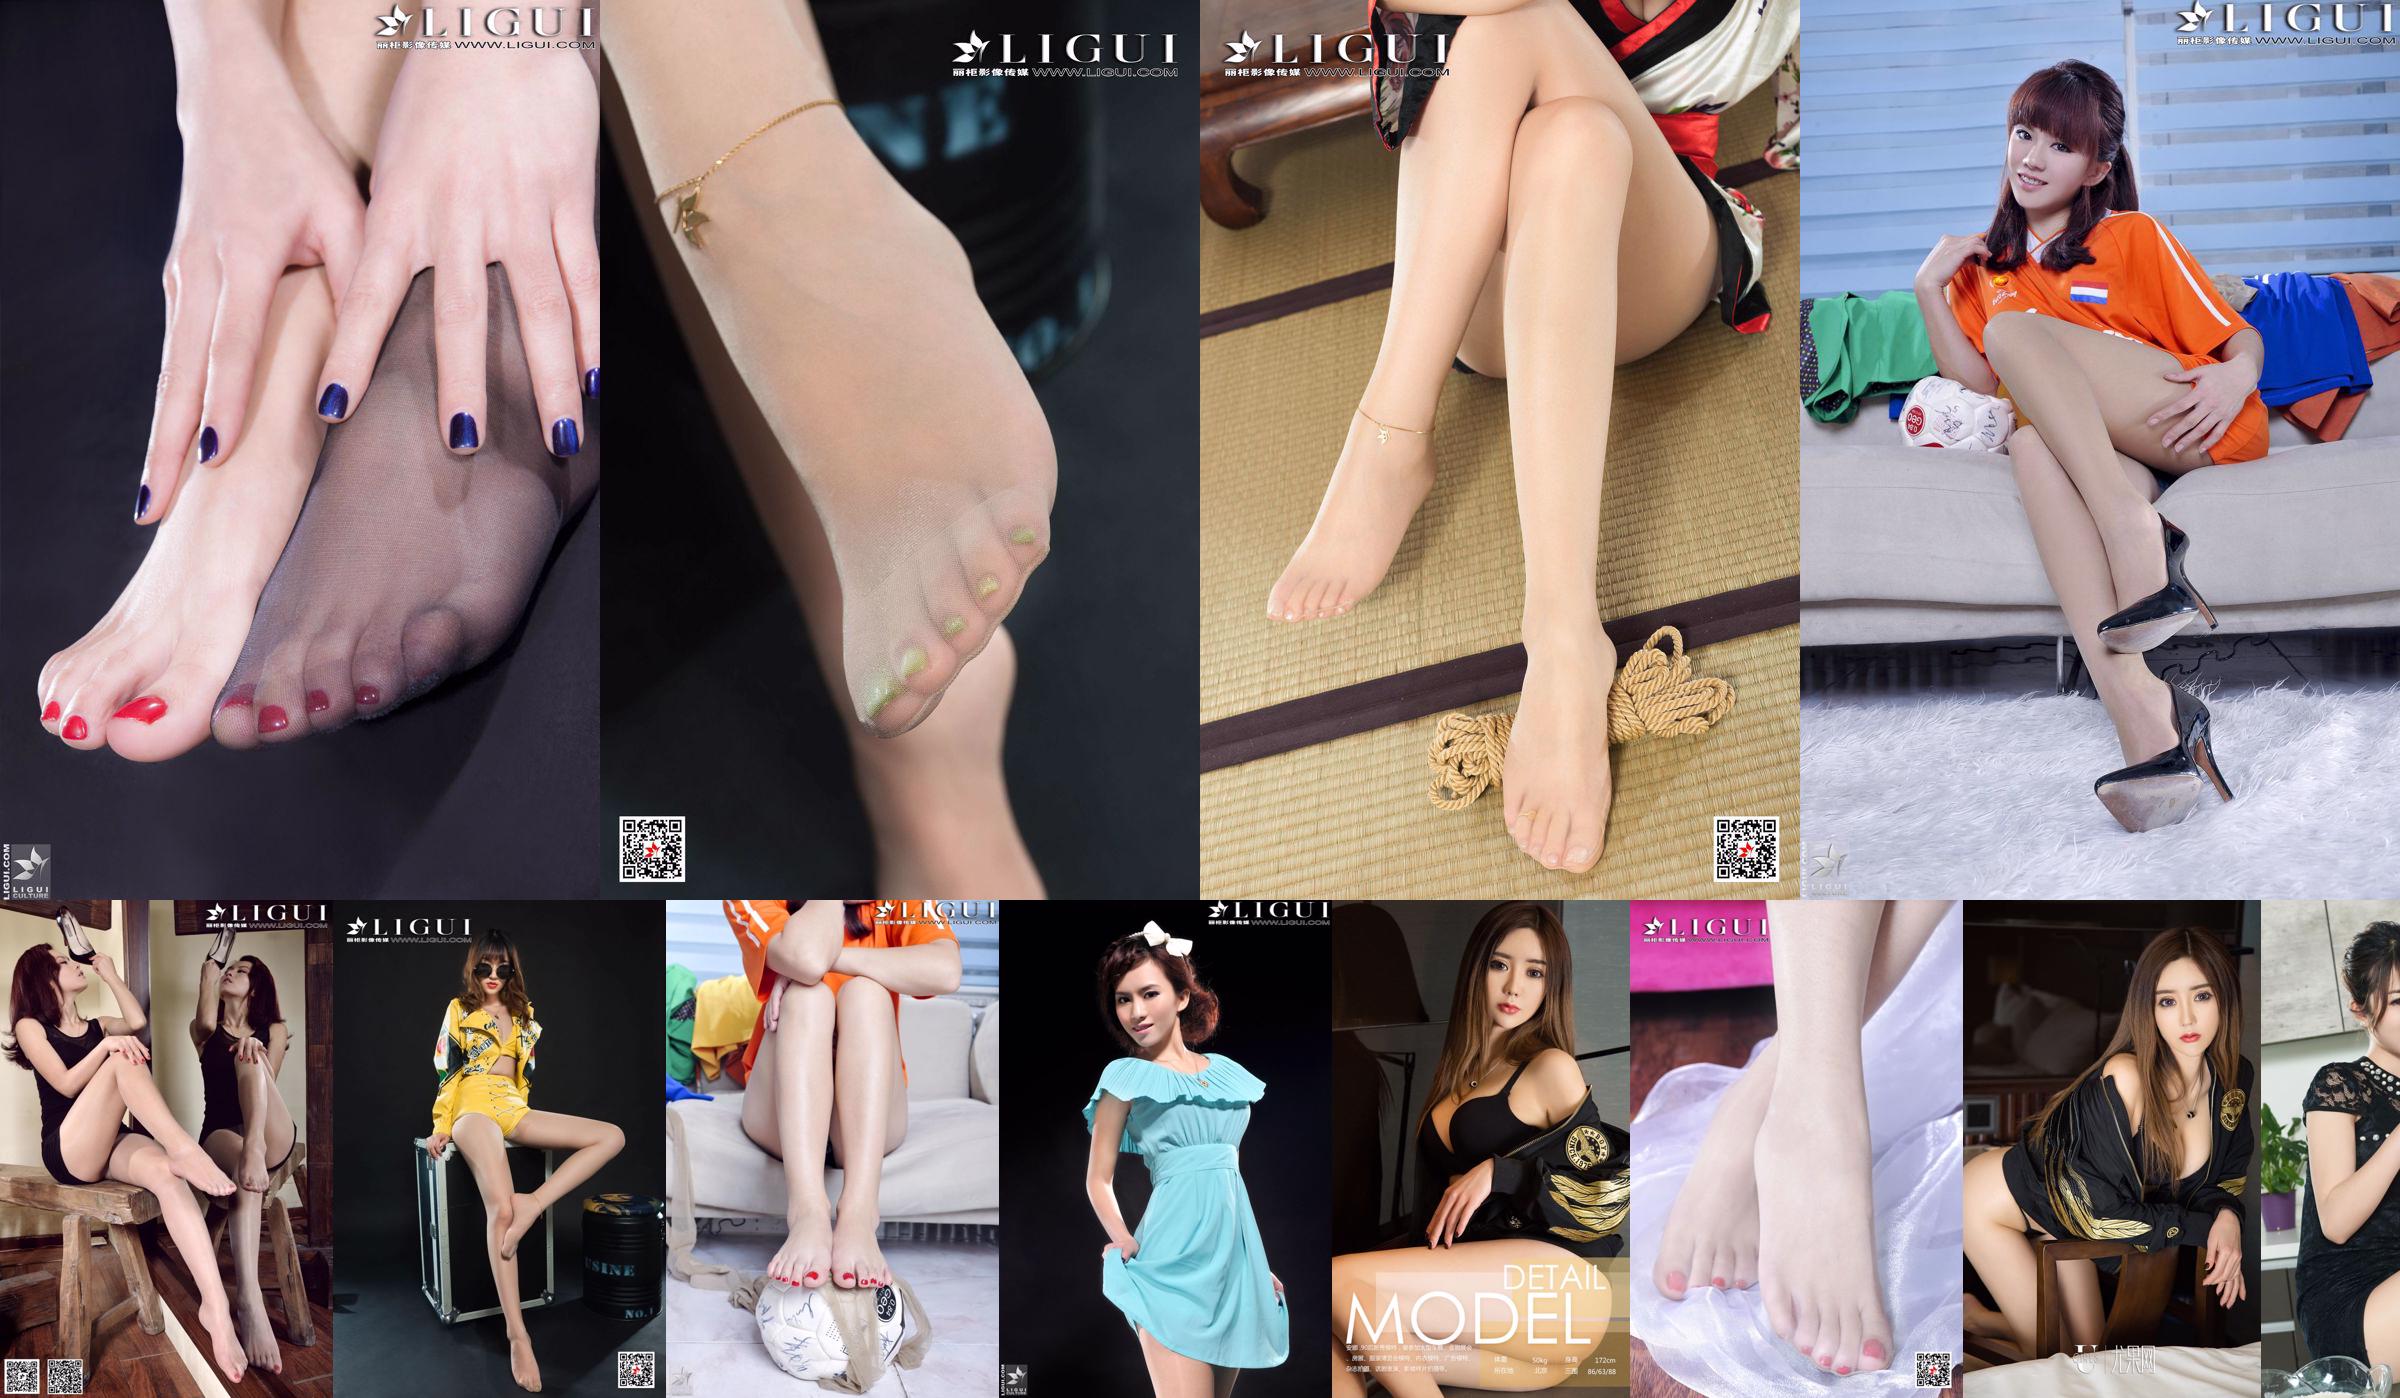 [丽柜LiGui] Model Anna "Black Silk High-heeled Feet" Beautiful Legs and Feet Photo Picture No.783178 Page 3